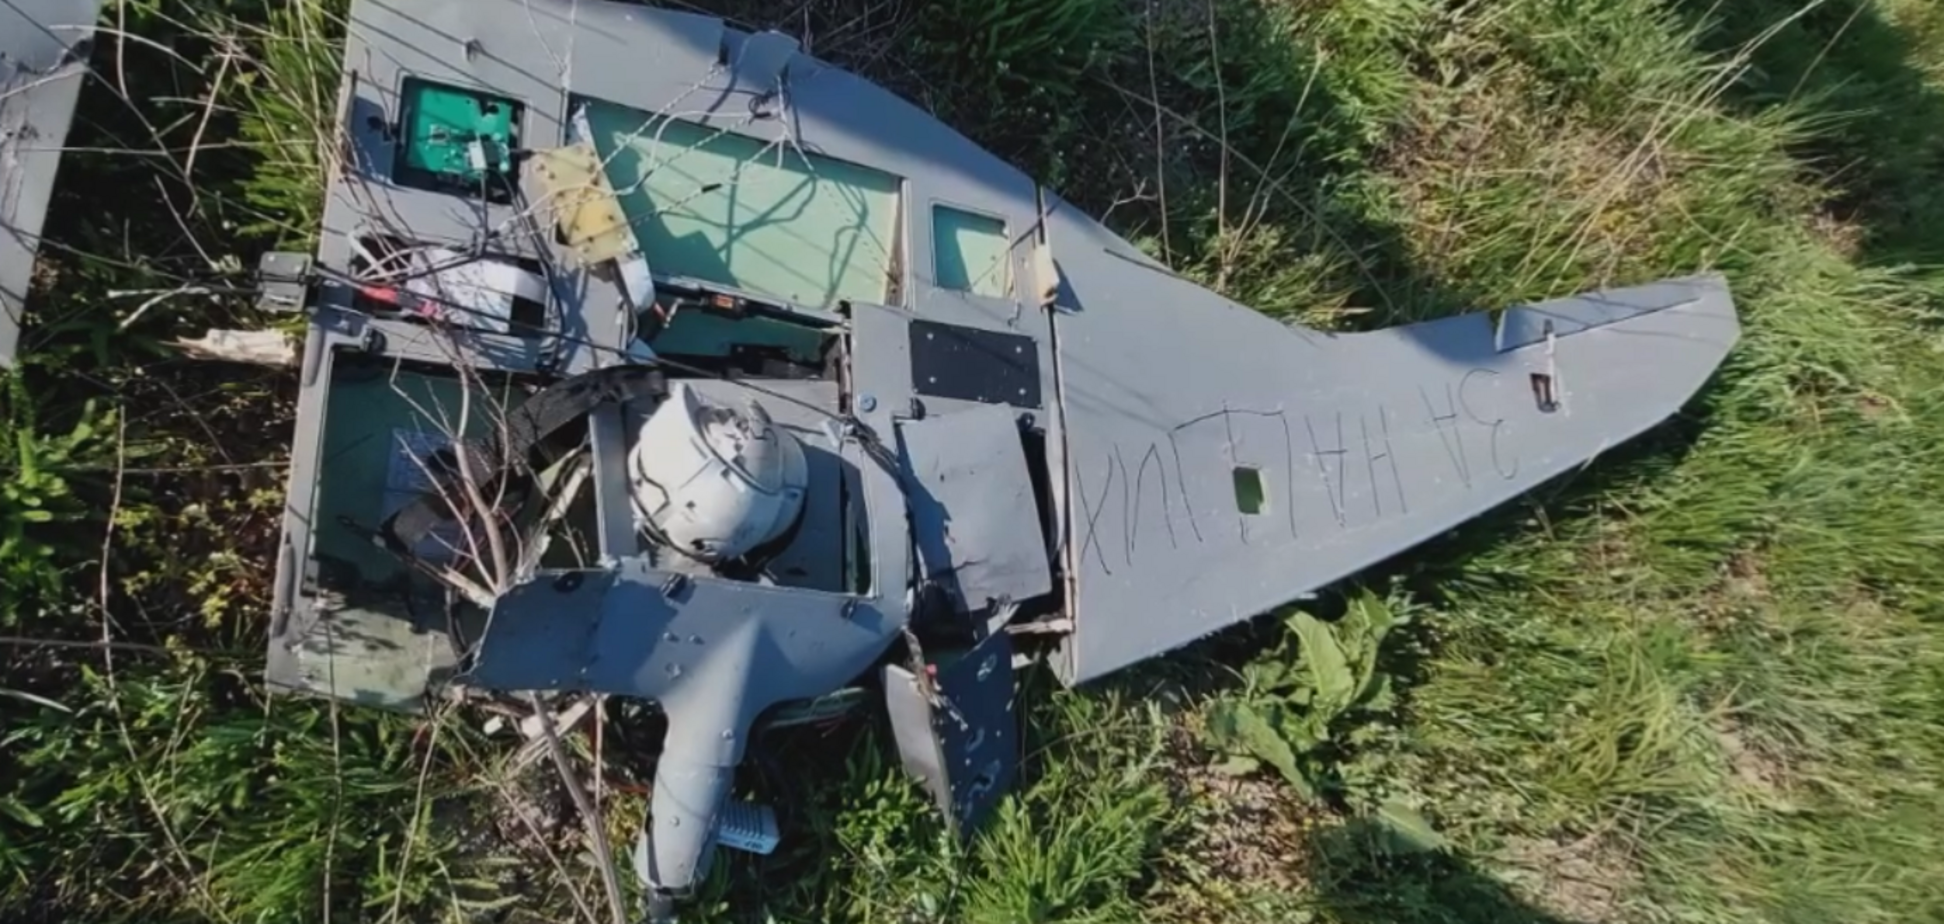 Вражеская 'птичка' долеталась: украинские зенитчики уничтожили российский разведывательный дрон Supercam. Видео